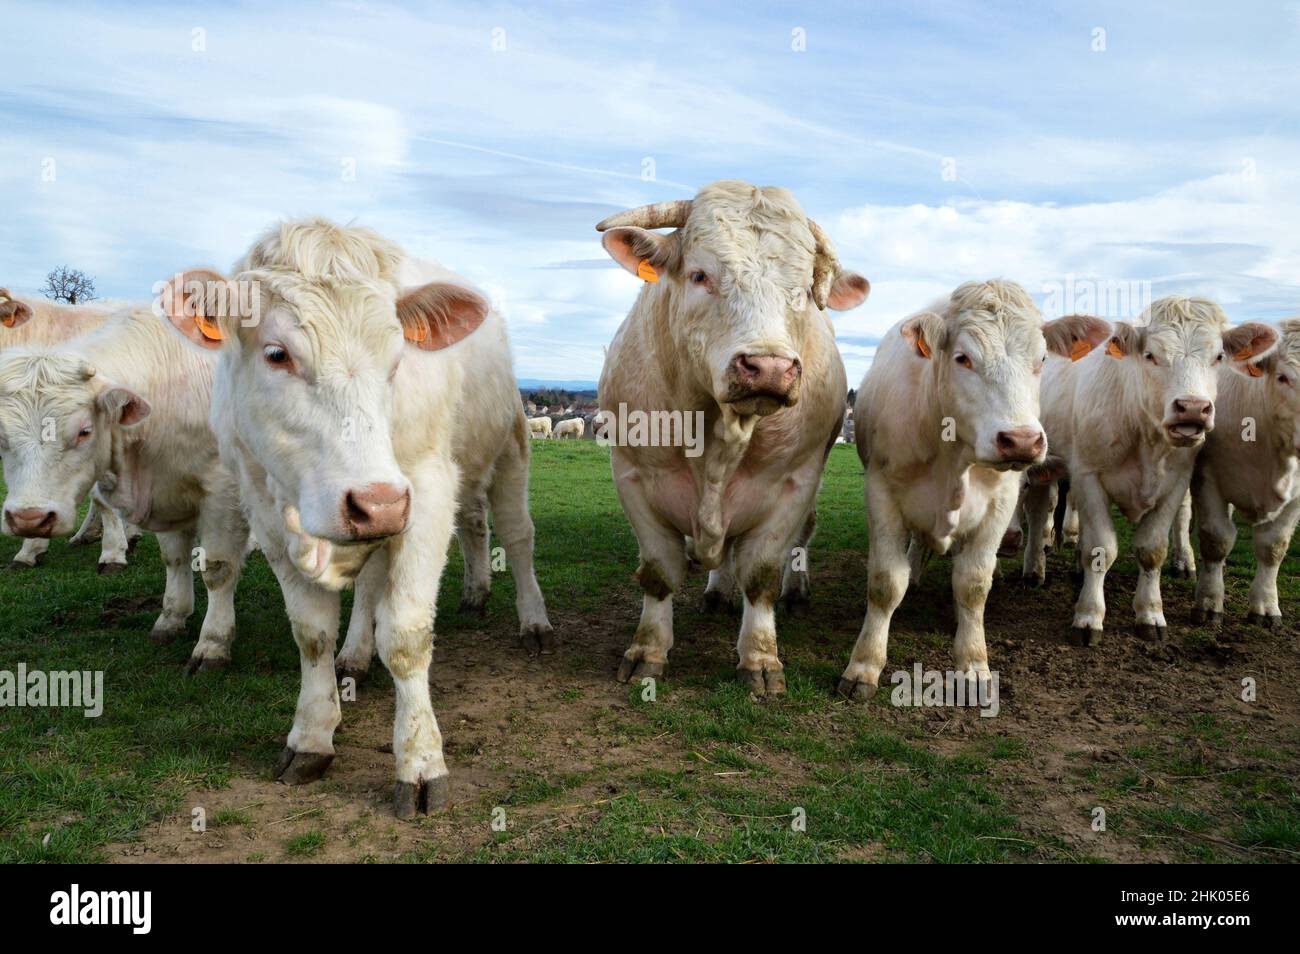 Un troupeau de vaches Charolais avec taureau dans un champ, à la campagne. Banque D'Images